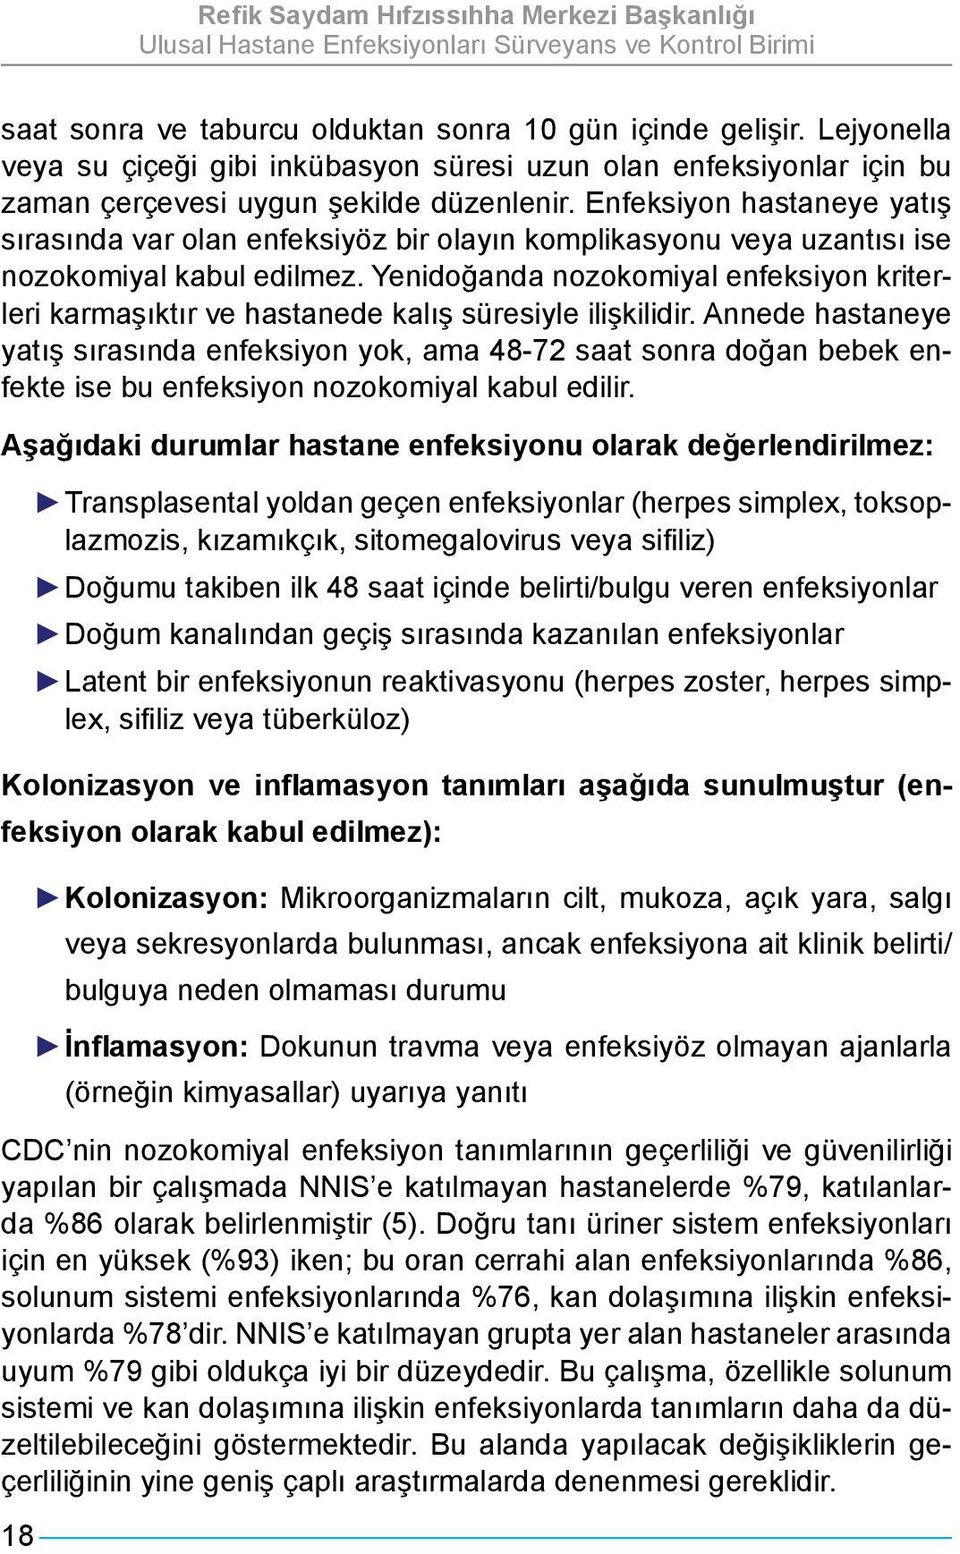 Yenidoğanda nozokomiyal enfeksiyon kriterleri karmaşıktır ve hastanede kalış süresiyle ilişkilidir.